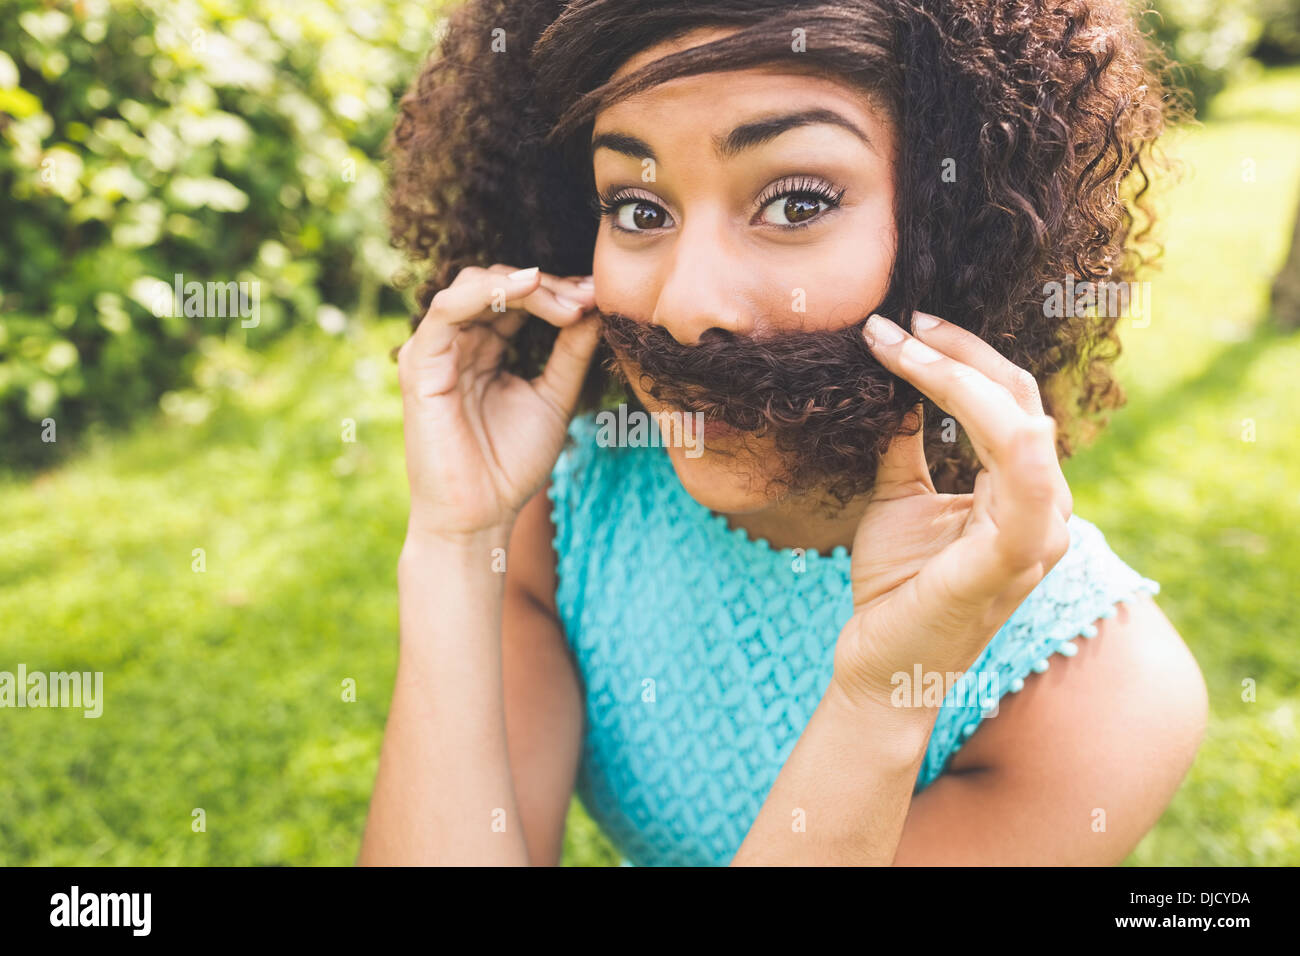 Contenu magnifique brunette prétendant avoir moustache Banque D'Images